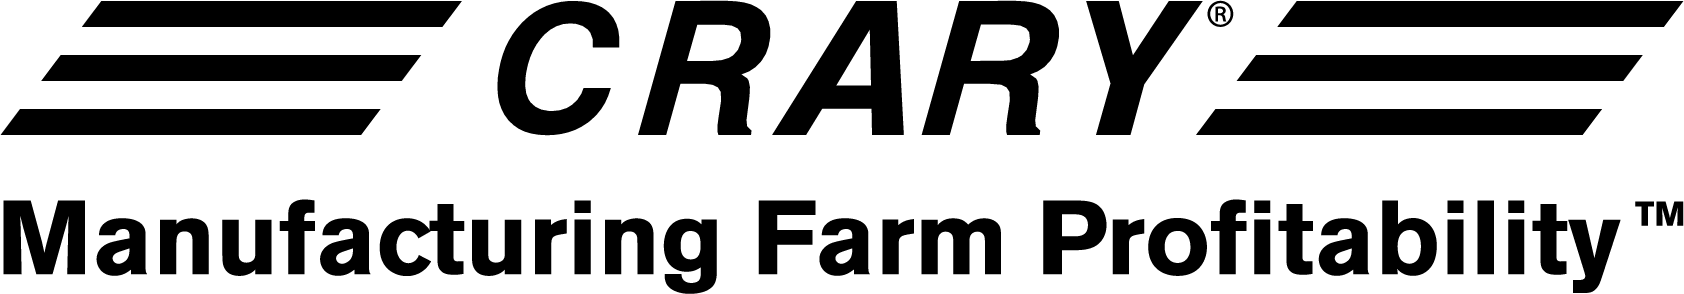 Crary Logo